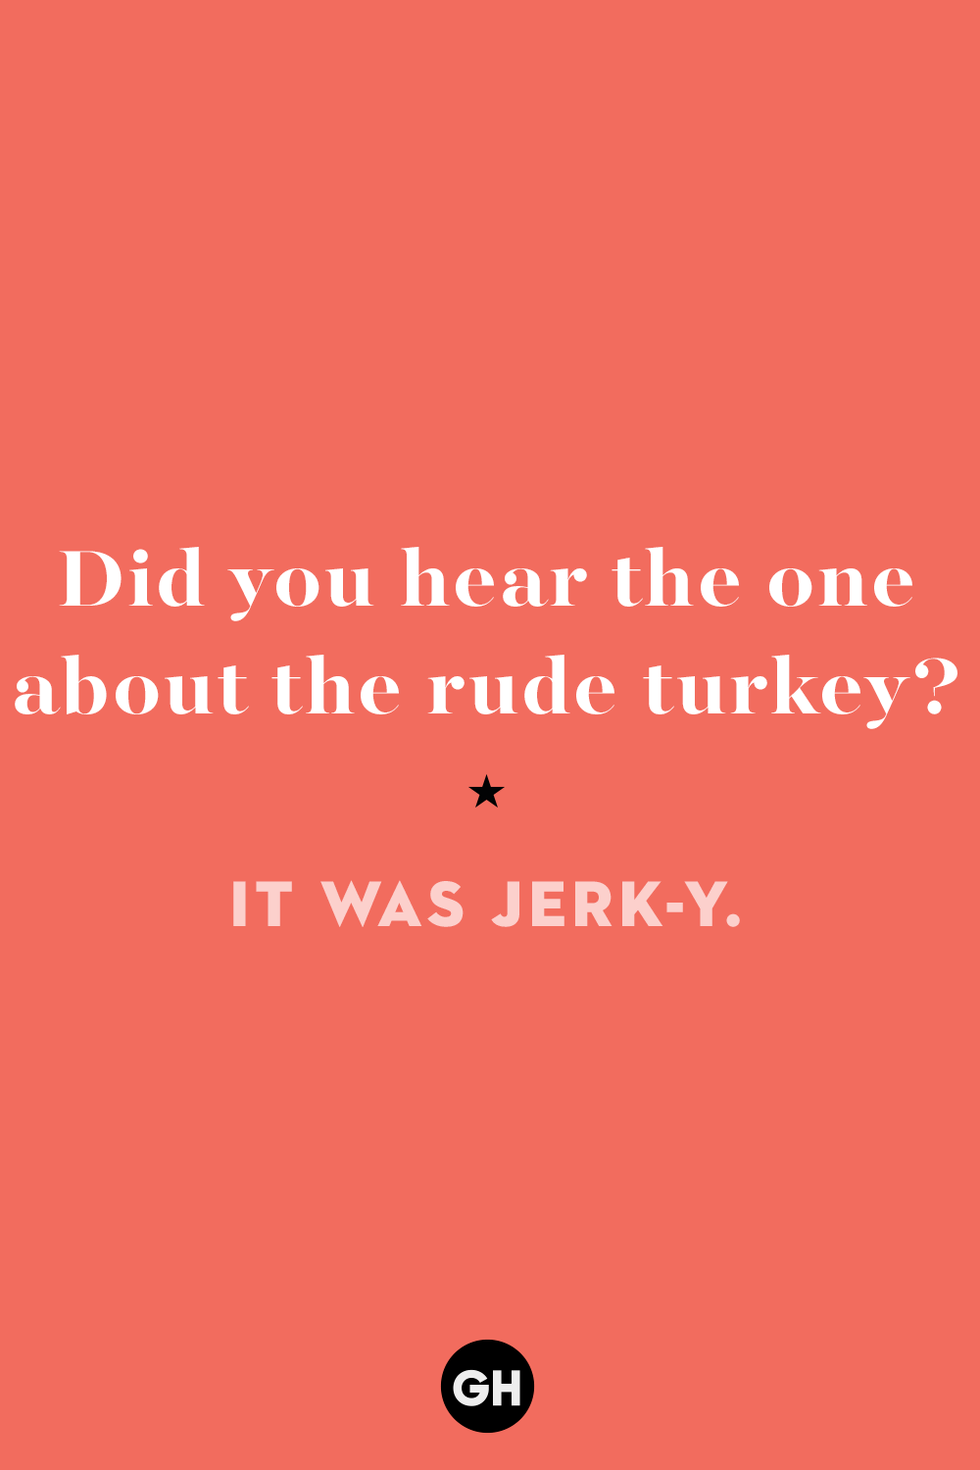 thanksgiving jokes — jerky